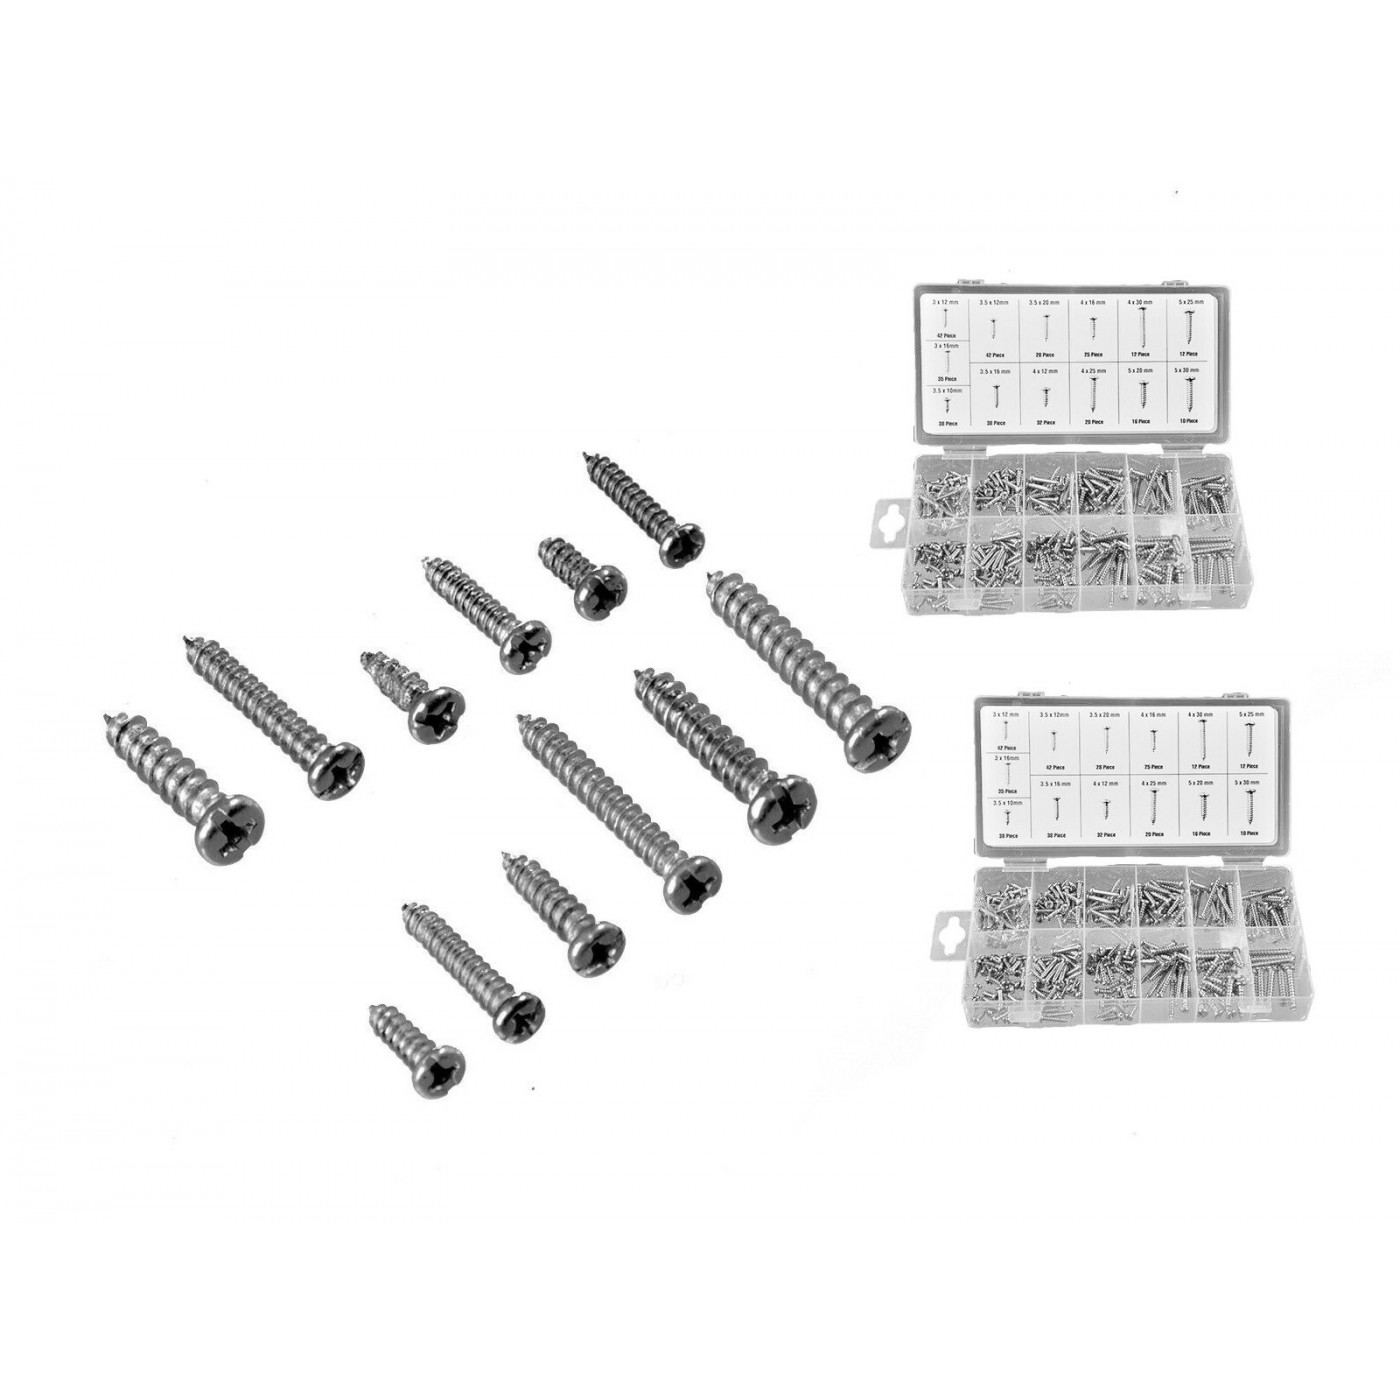 Set of 700 parker screws